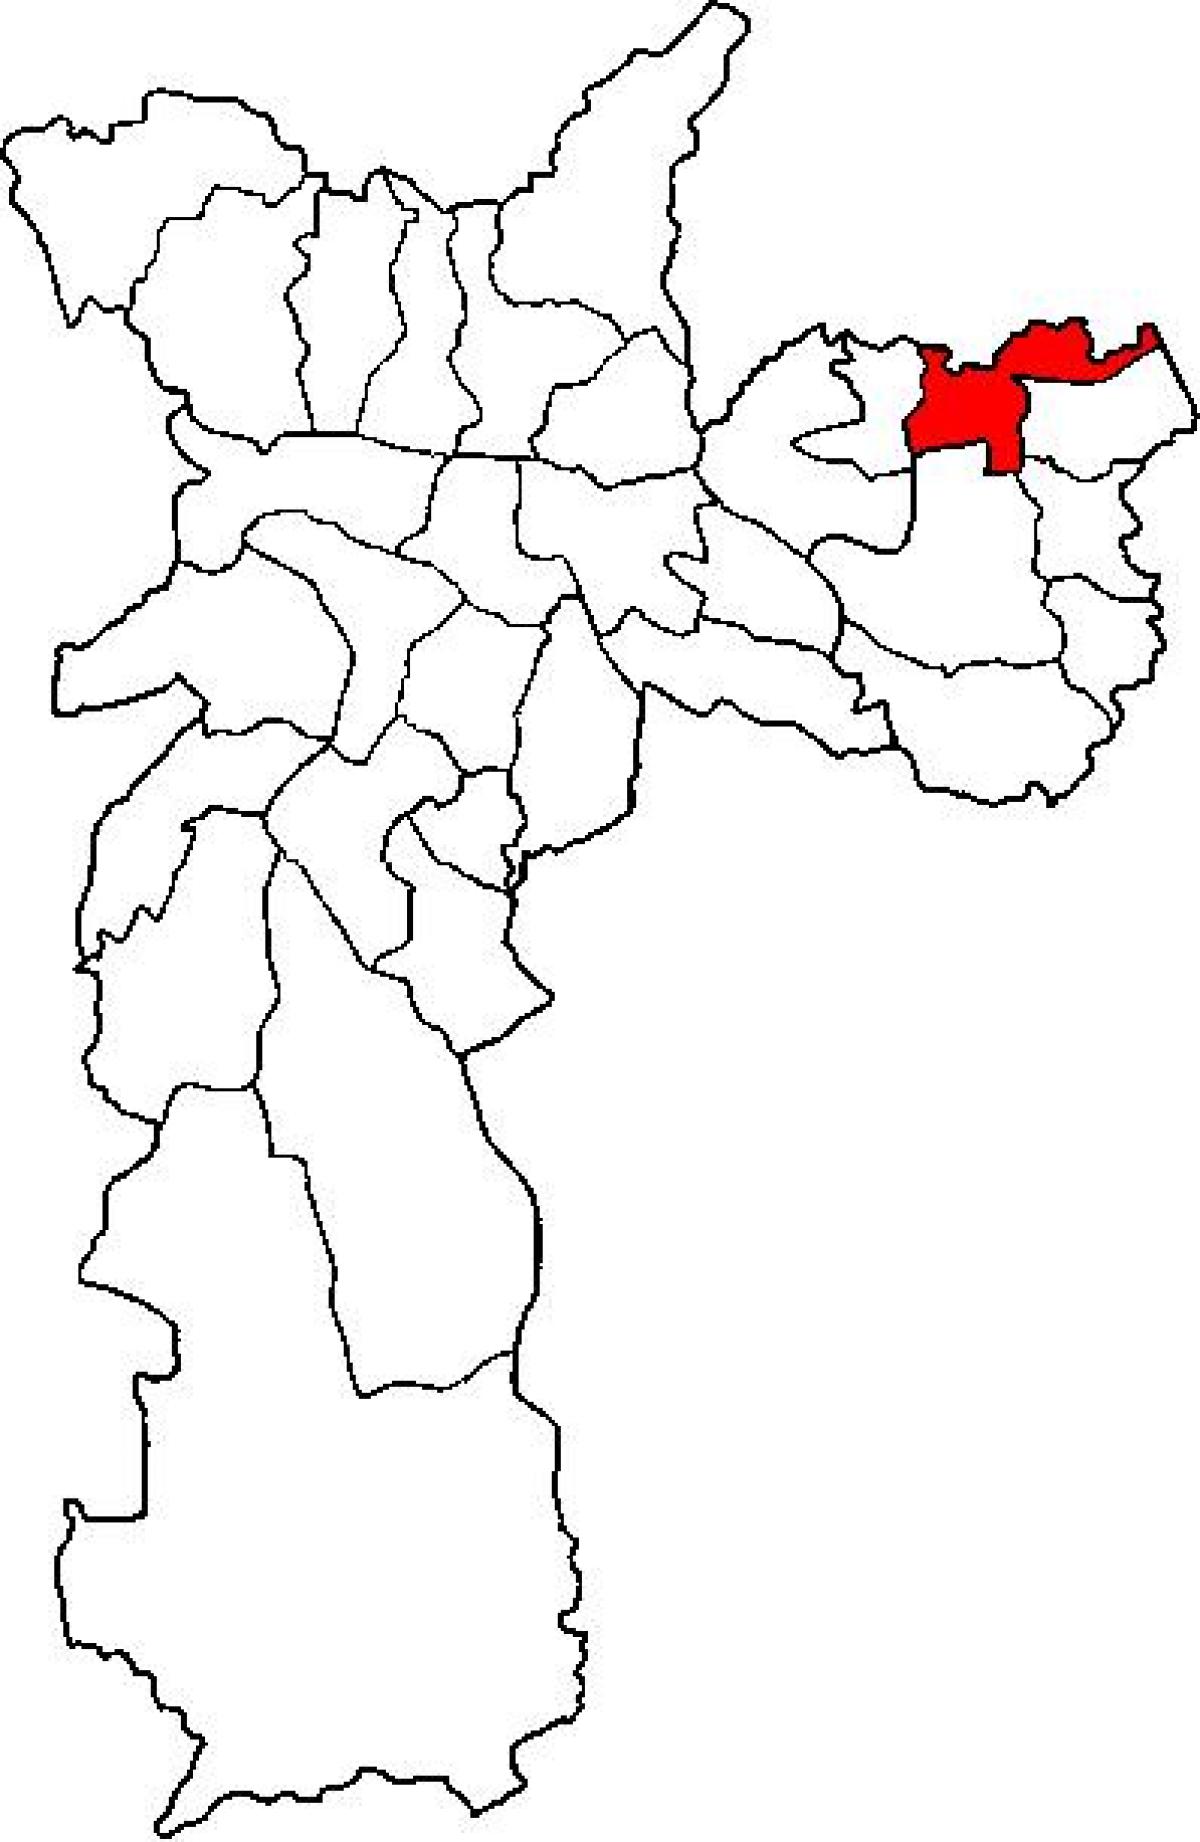 地図のサンミゲルパウリスタのサブ-県サンパウロ